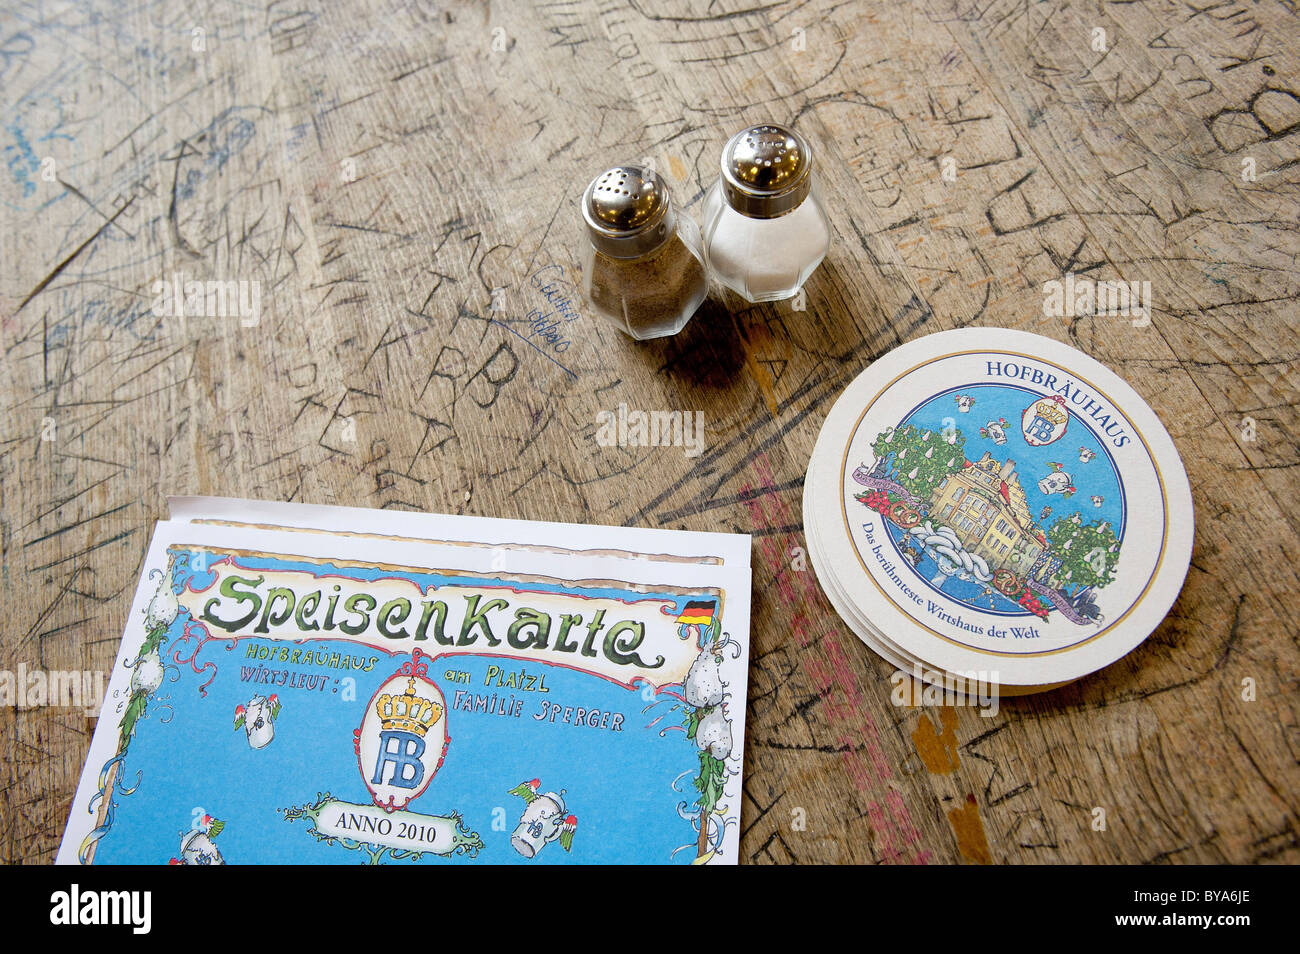 Salz- und Pfefferstreuer, Bierdeckel und ein Menü auf einem Tisch im Hofbrauhaus, eine Bierhalle, Bierkultur, München, Bayern Stockfoto